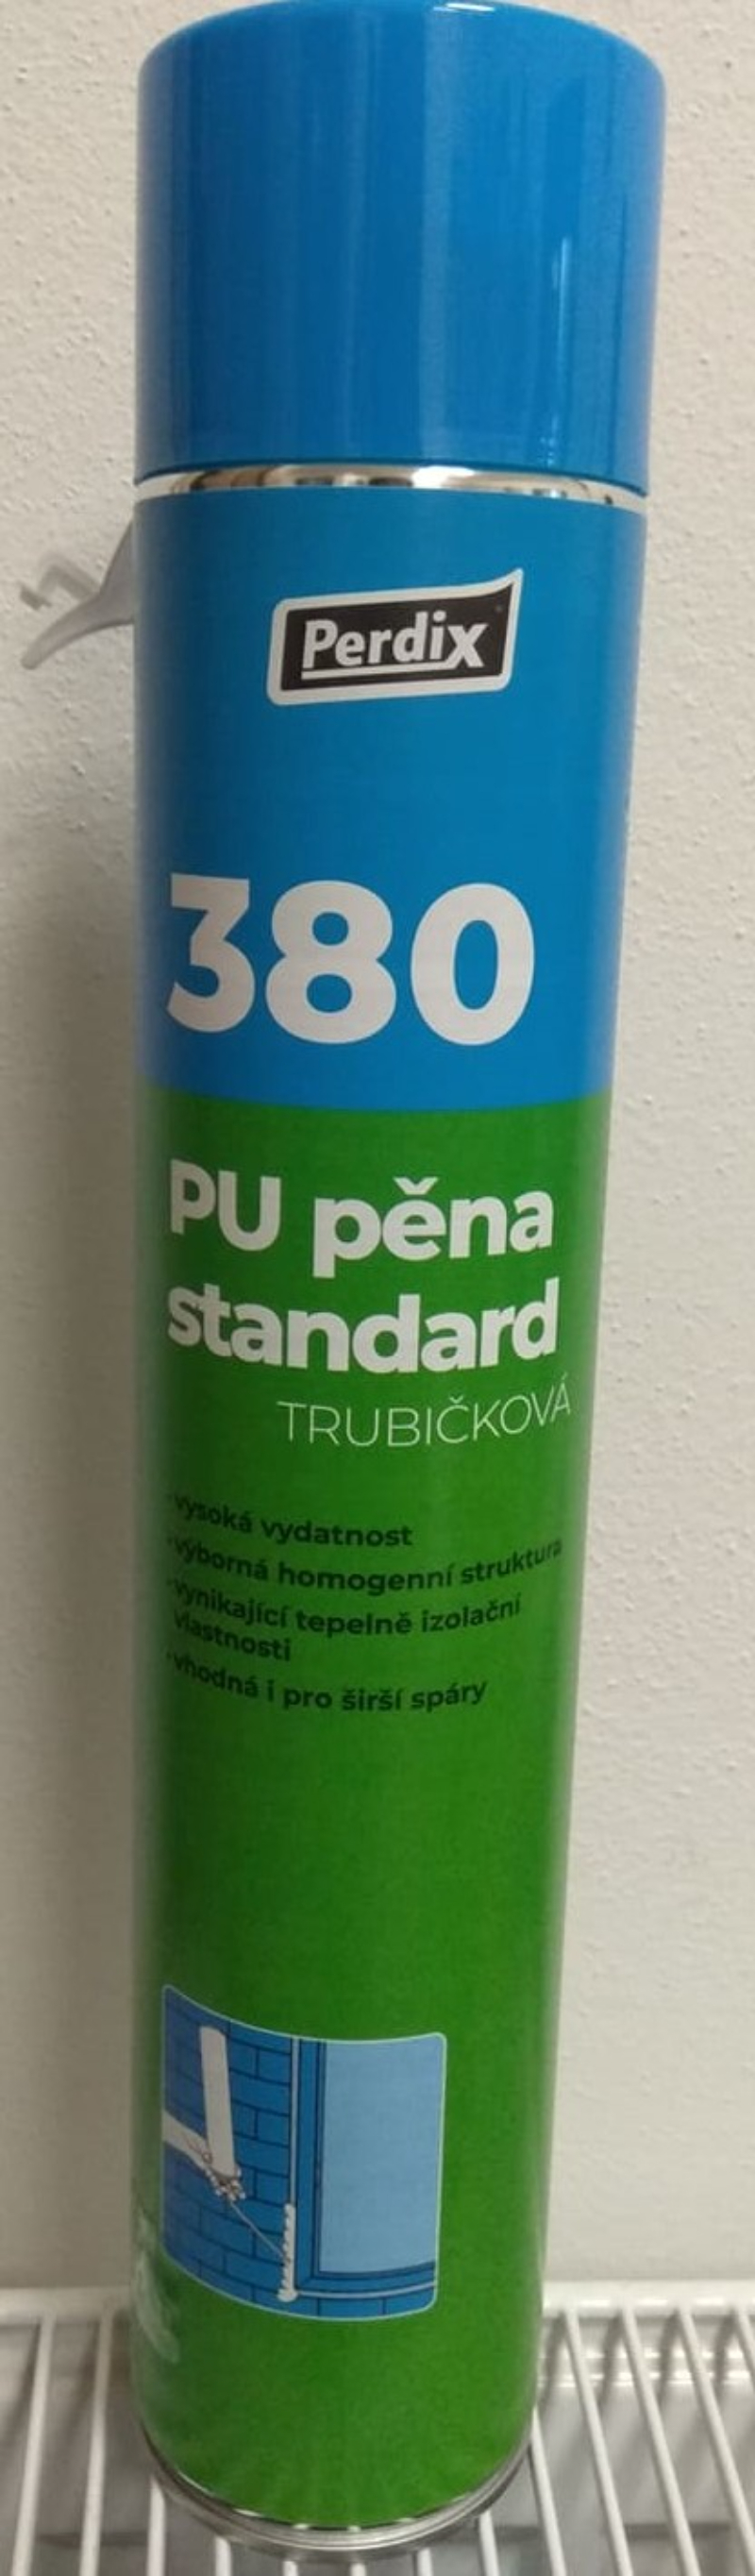 PU pěna standart trubičková 750ml PERDIX 380